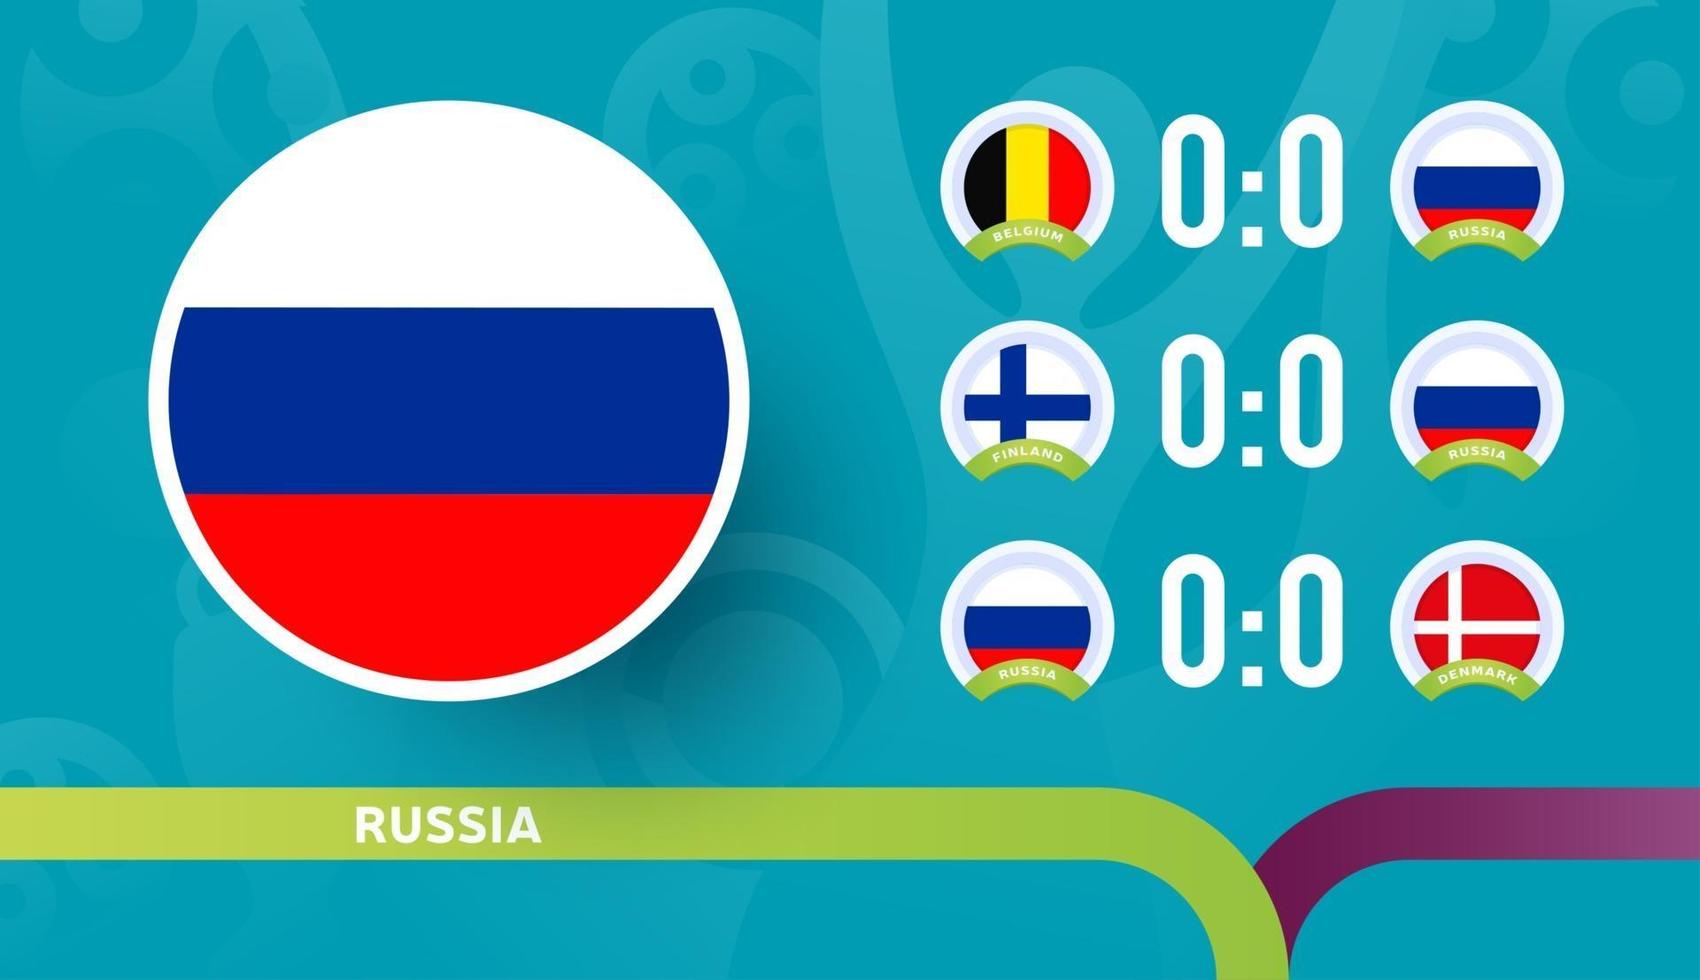 Die russische Nationalmannschaft plant Spiele in der Endphase der Fußballmeisterschaft 2020. Vektorgrafik von Fußballspielen 2020. vektor